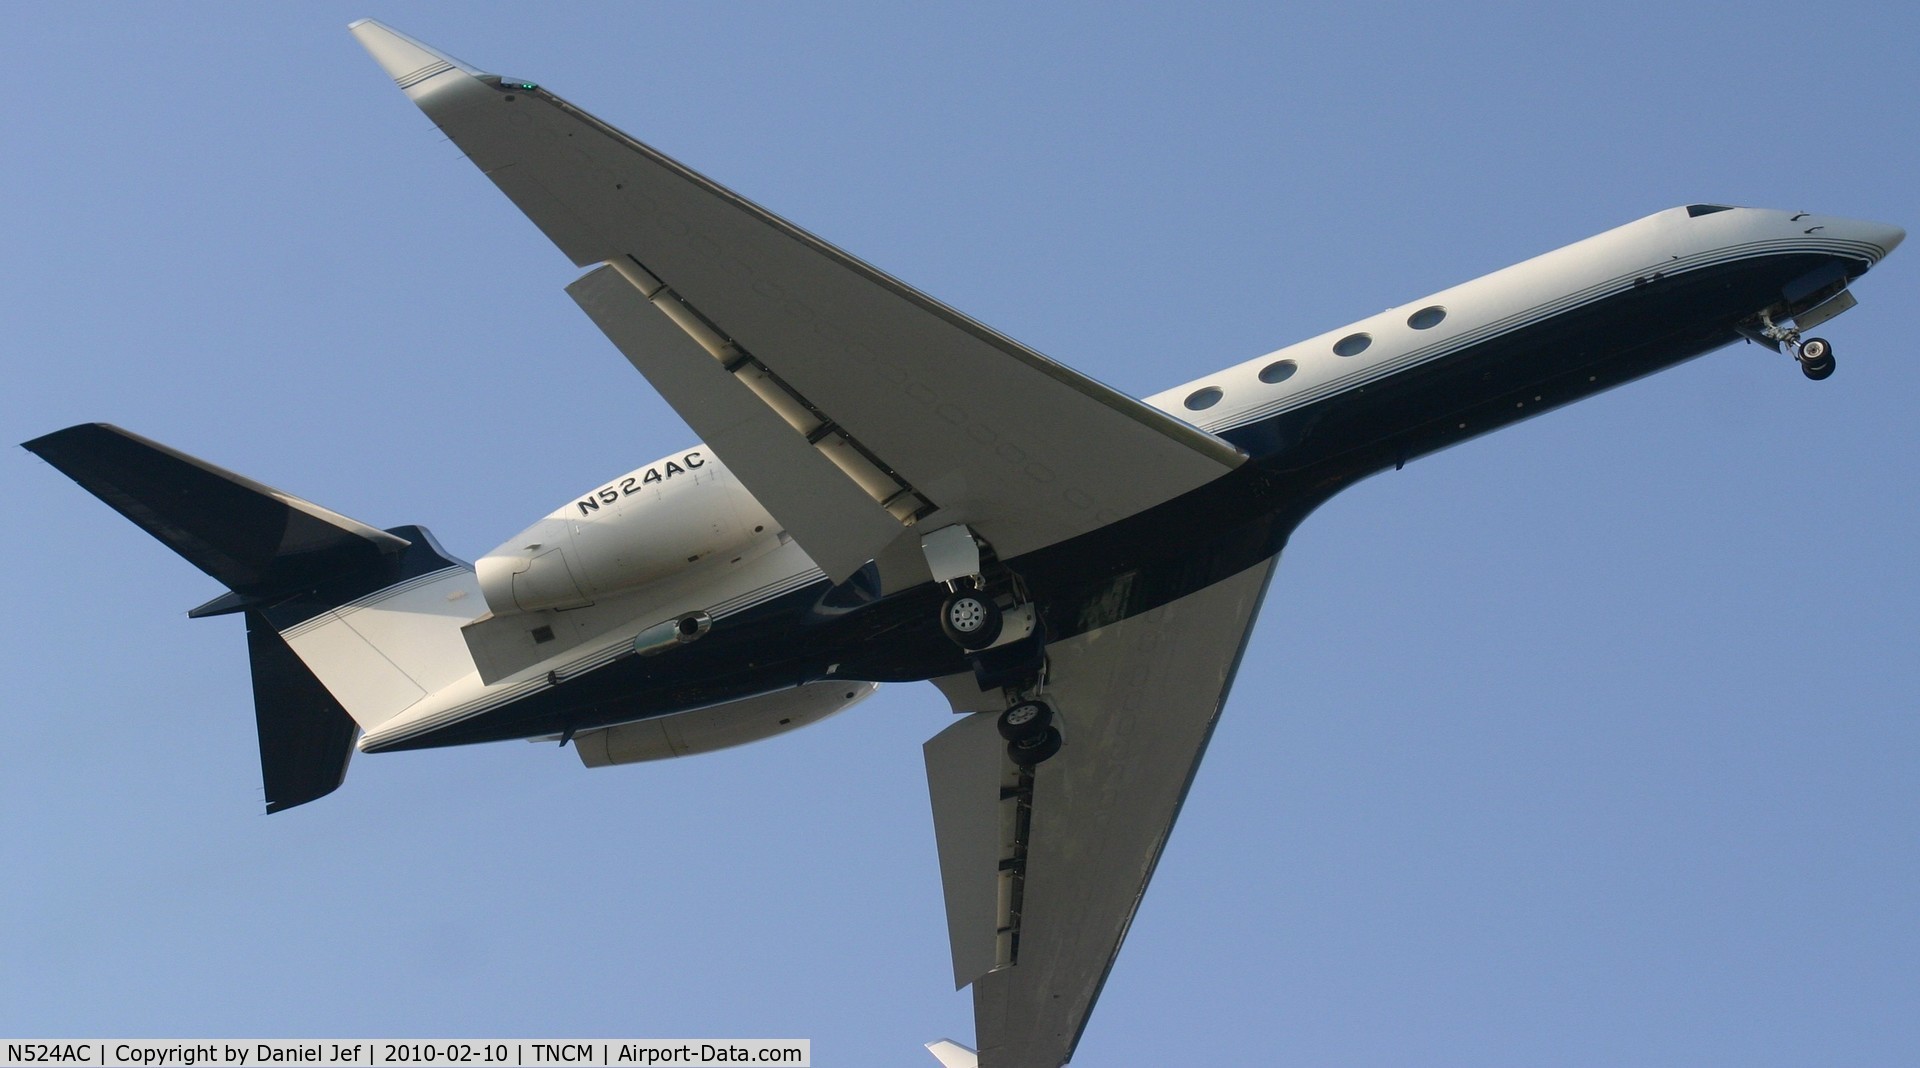 N524AC, 2002 Gulfstream Aerospace G-V C/N 686, N524AC departing TNCM